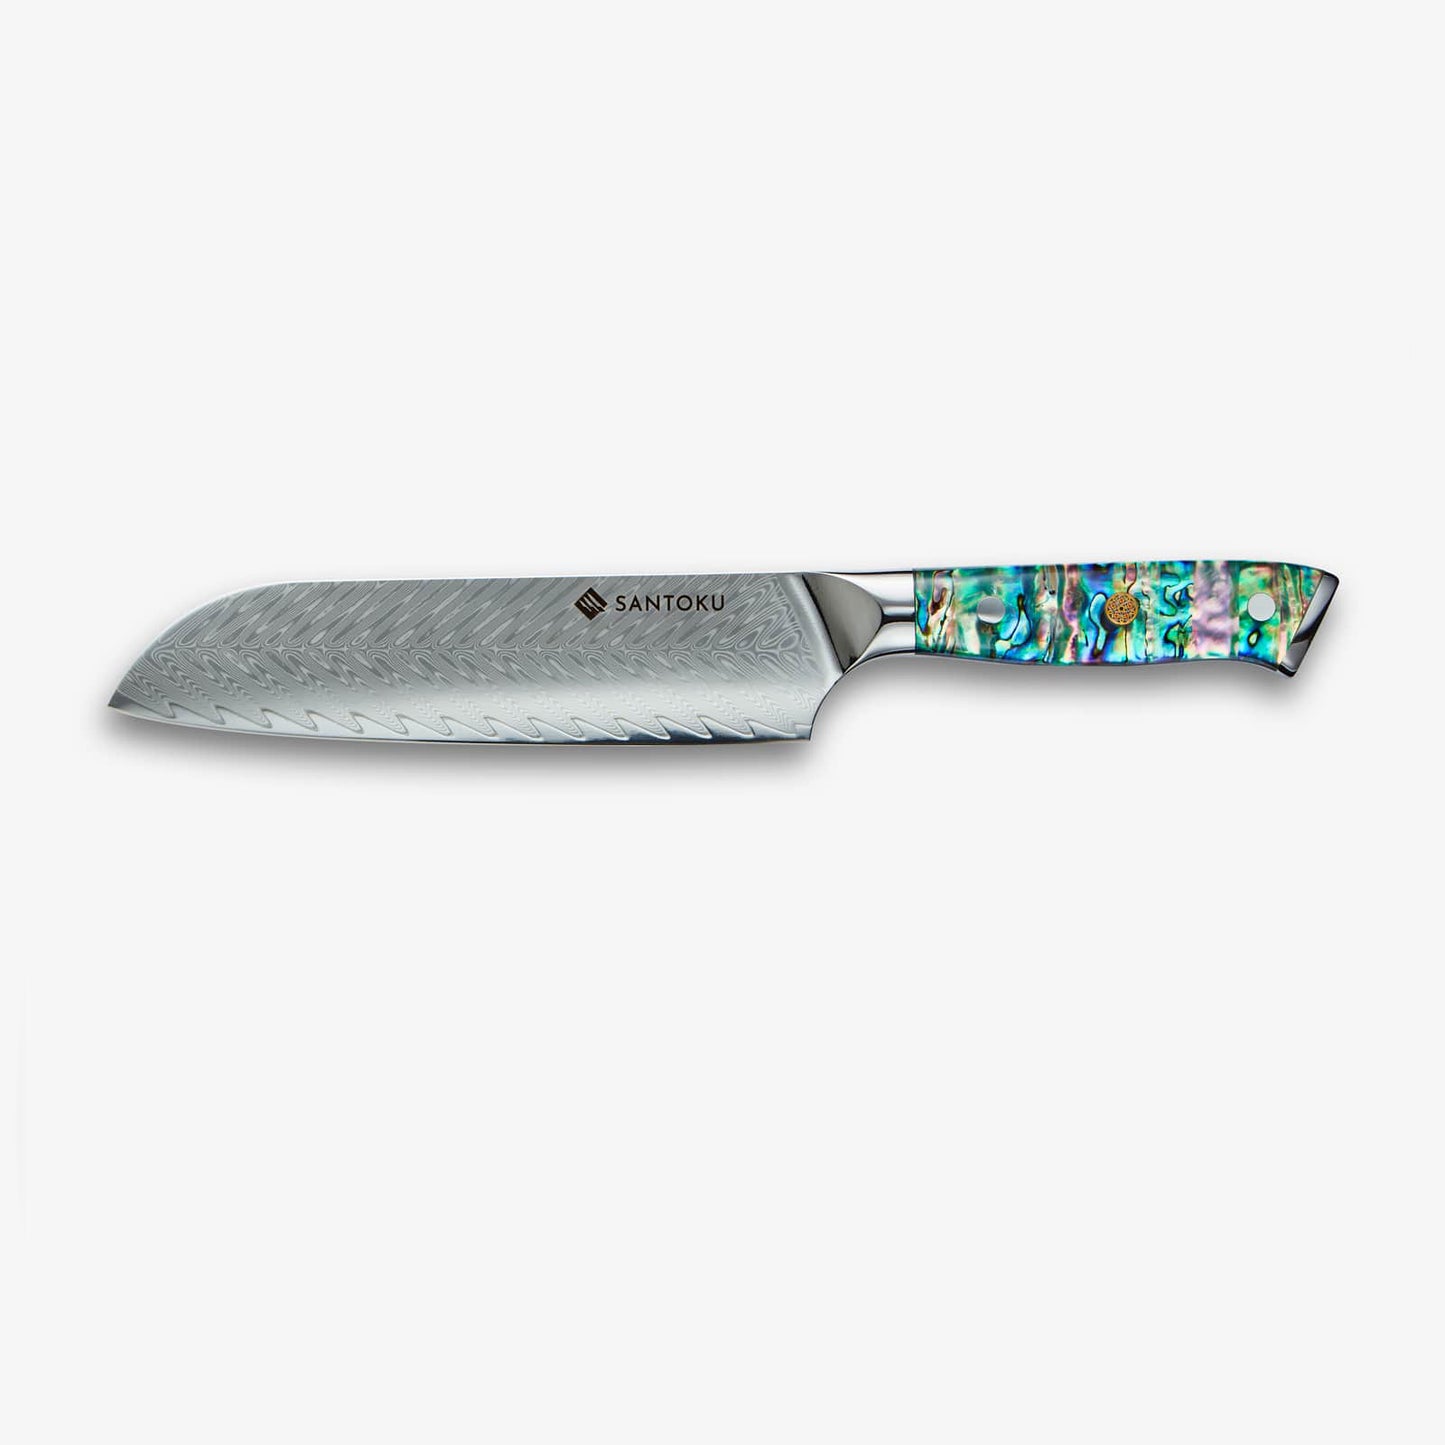 Chikashi  (ちかし) Damascus Steel Knife With Abalone Handle